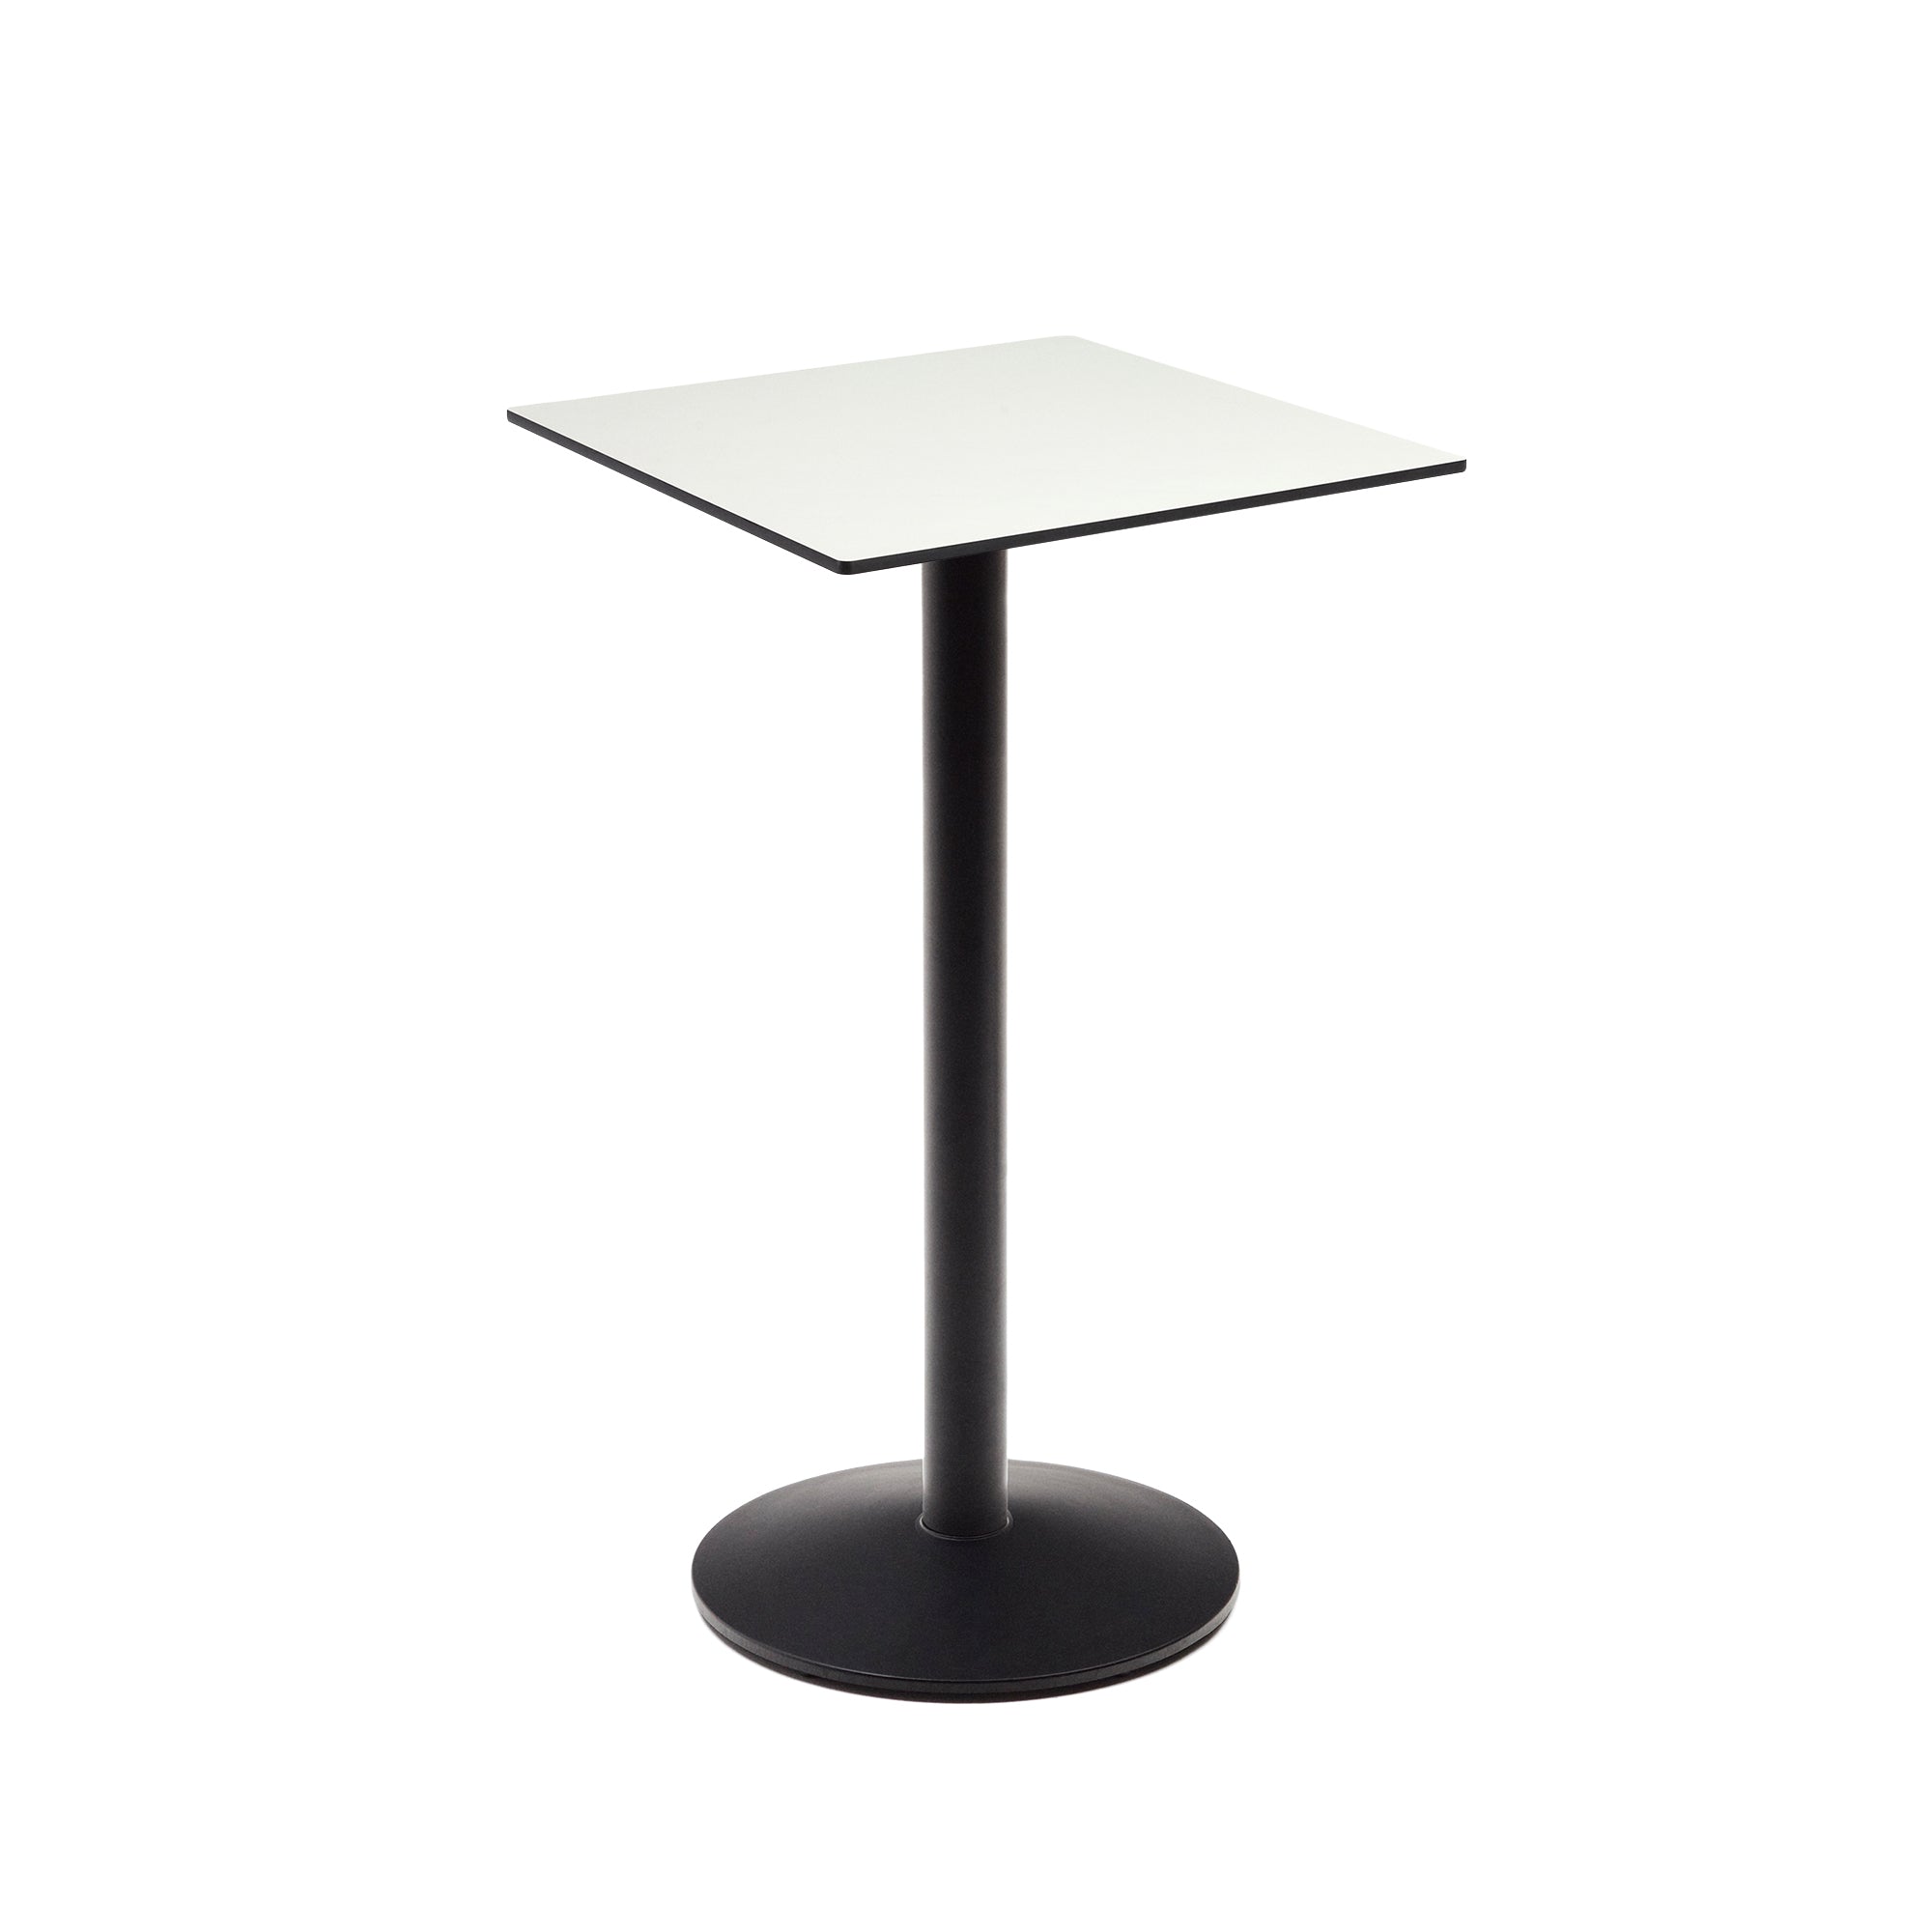 Esilda magas asztal fehér színben, fekete festett fém lábbal, 60 x 60 x 96 cm